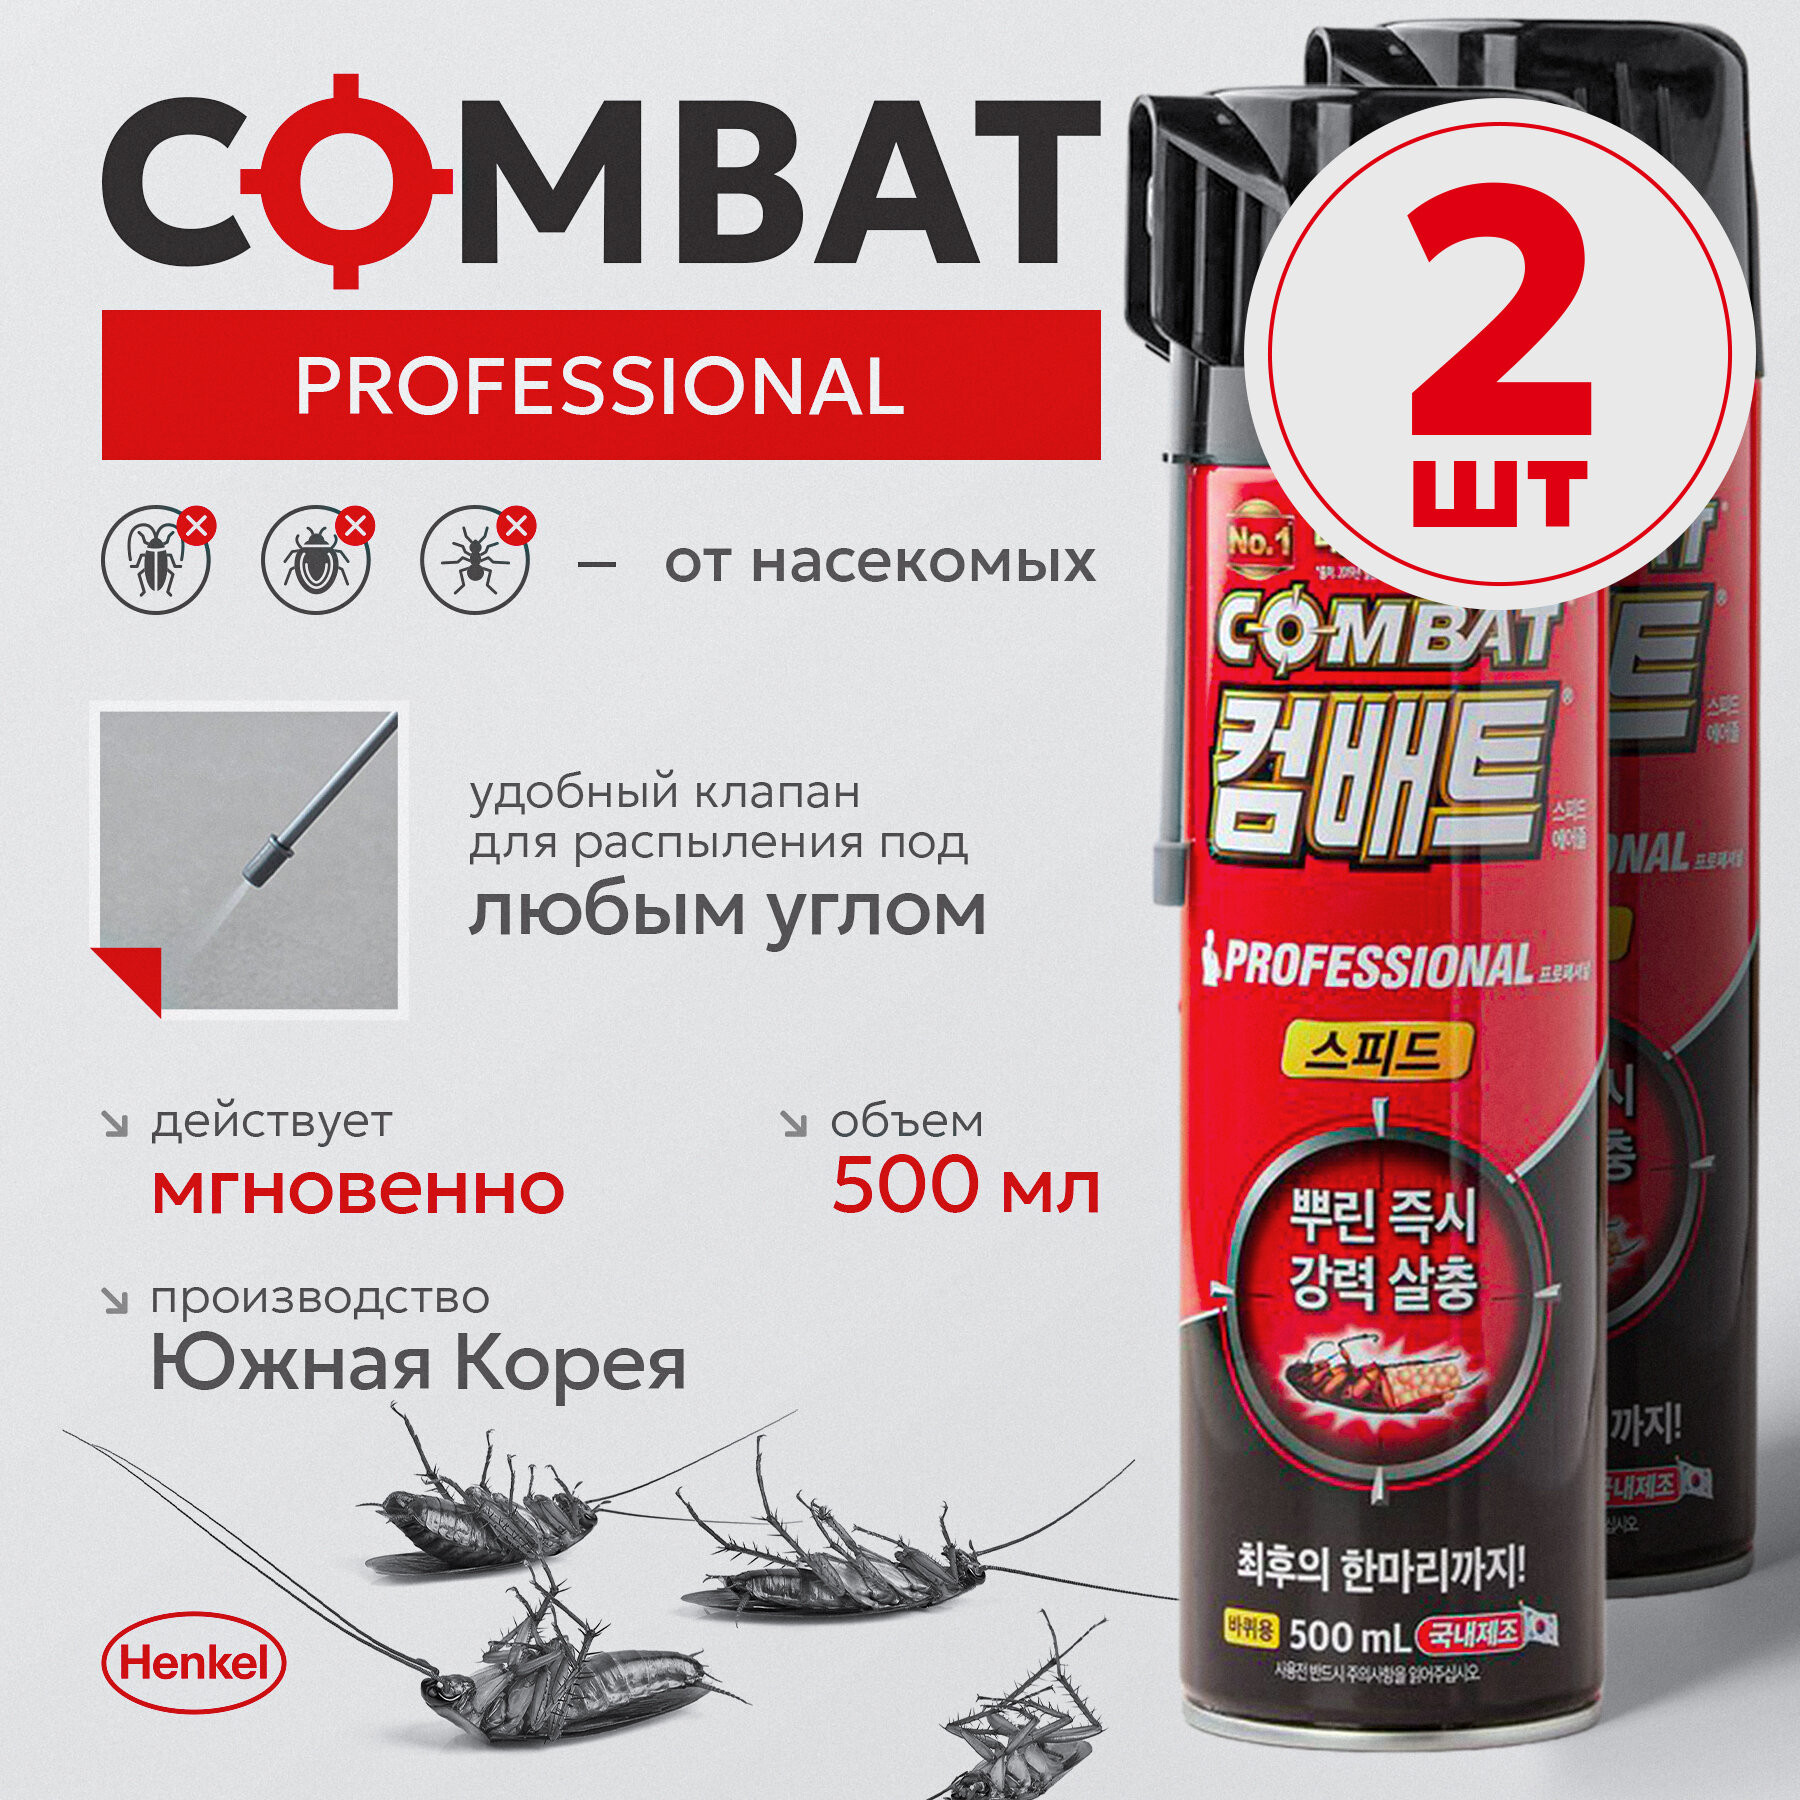 Combat Professional Super - аэрозоль от насекомых, 100 кв м, 2 штуки в упаковке